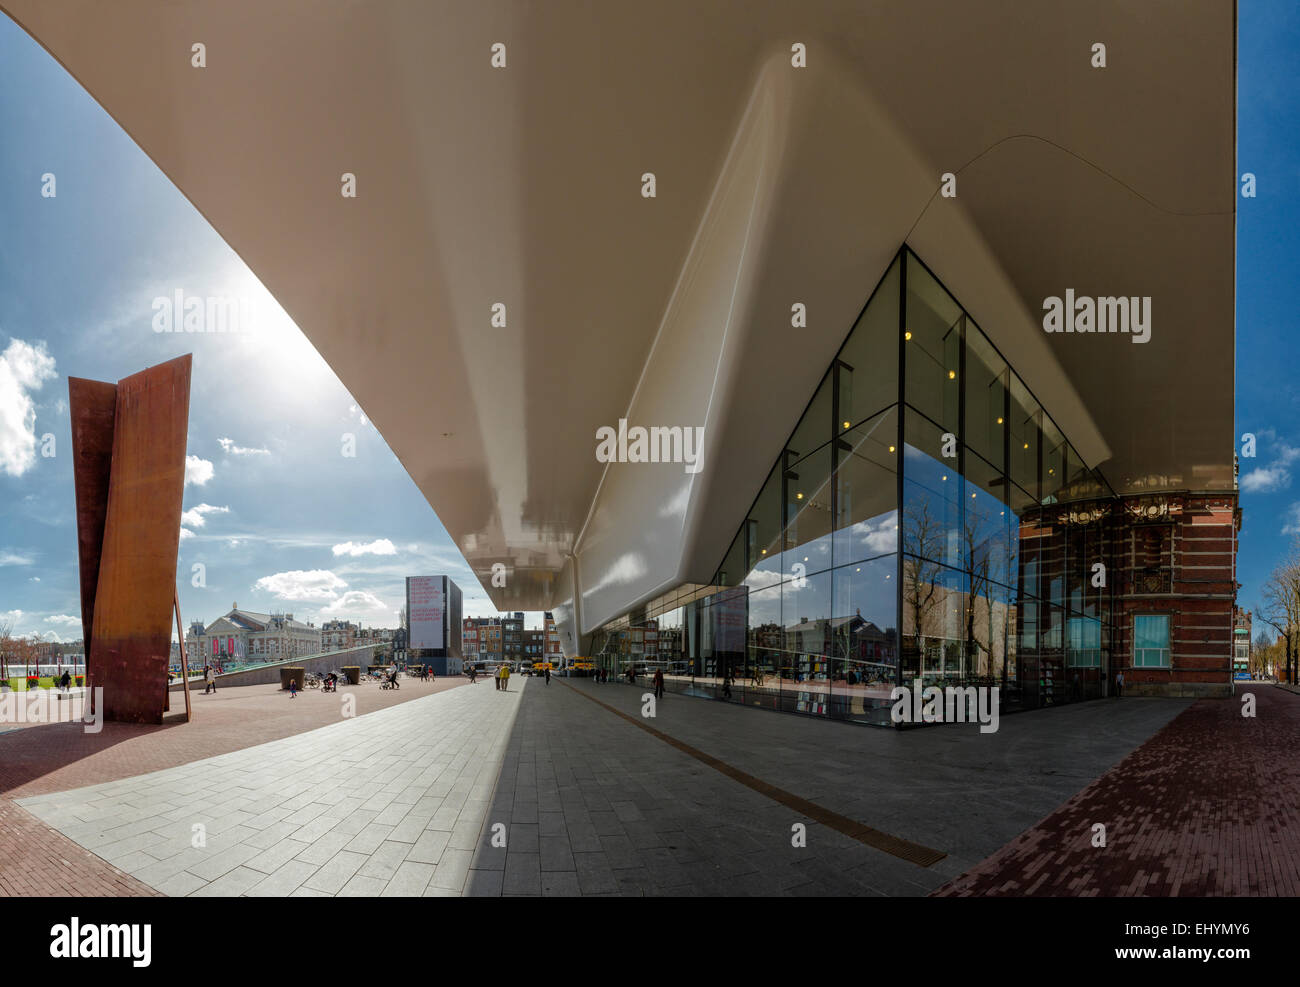 Paesi Bassi, Olanda, Europa Amsterdam Museum Square, il Museo Stedelijk, città, villaggio, molla, Foto Stock